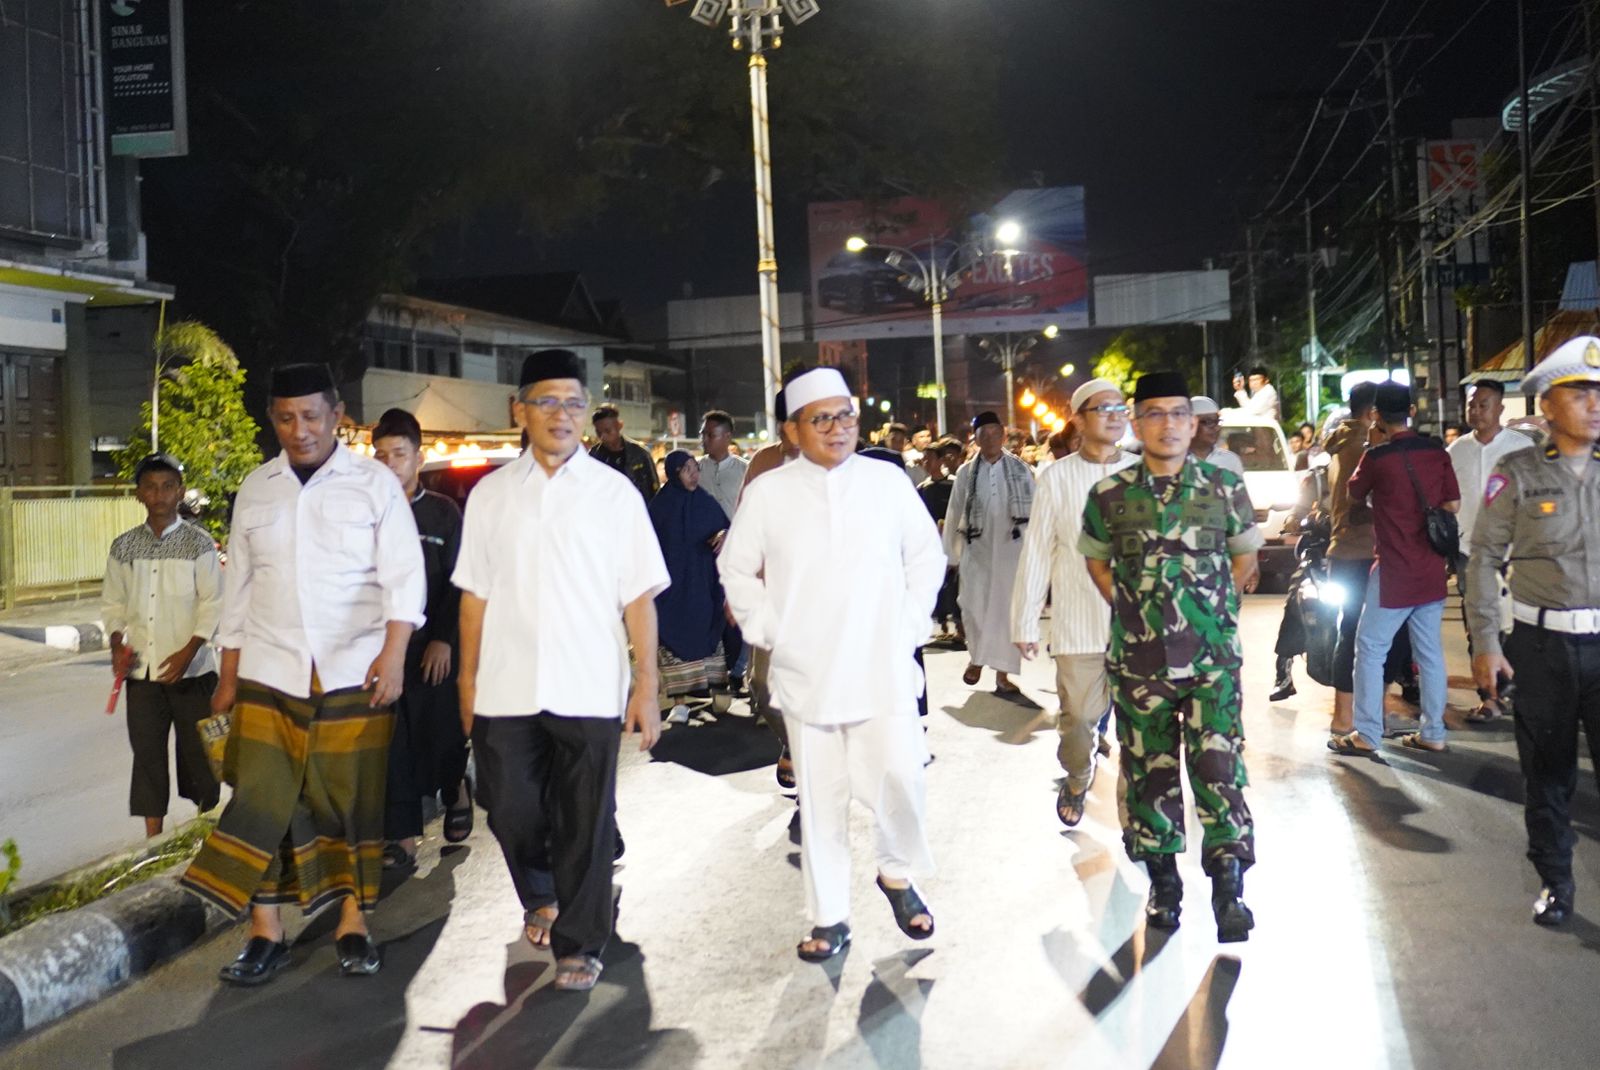   Wali Kota Gorontalo, Marten Taha bersama jajarangnya saat menyelenggarakan sahur on the road. (Foto: Humas Pemkot Gorontalo)